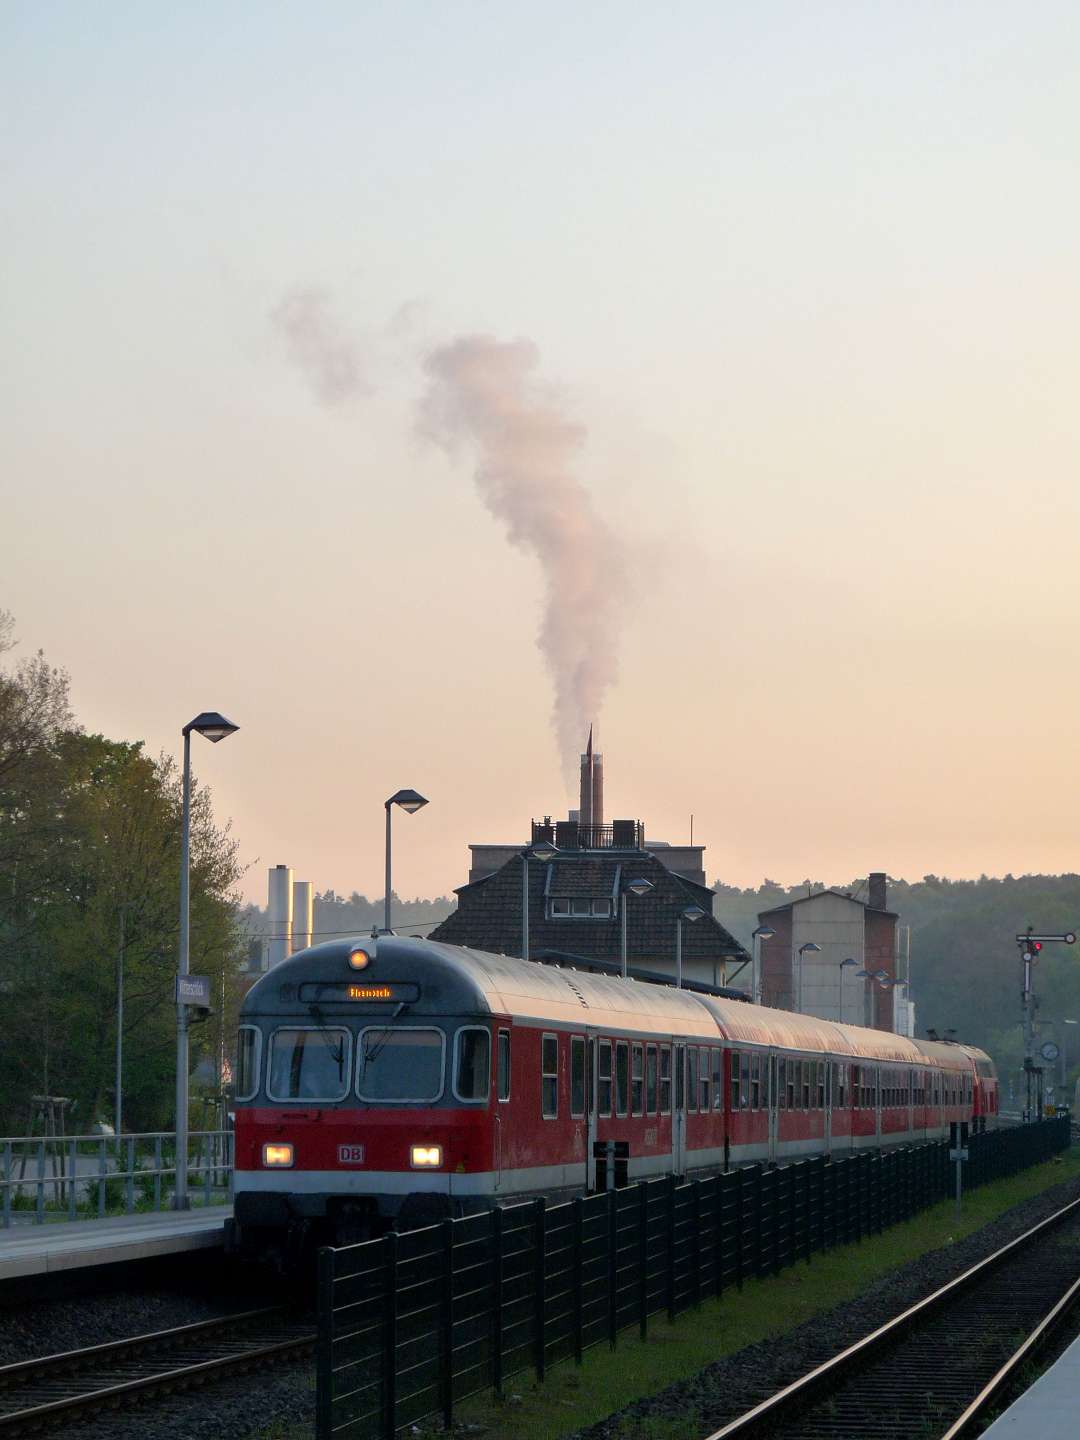 Witterschlick Bahnhof an der Voreifelbahn